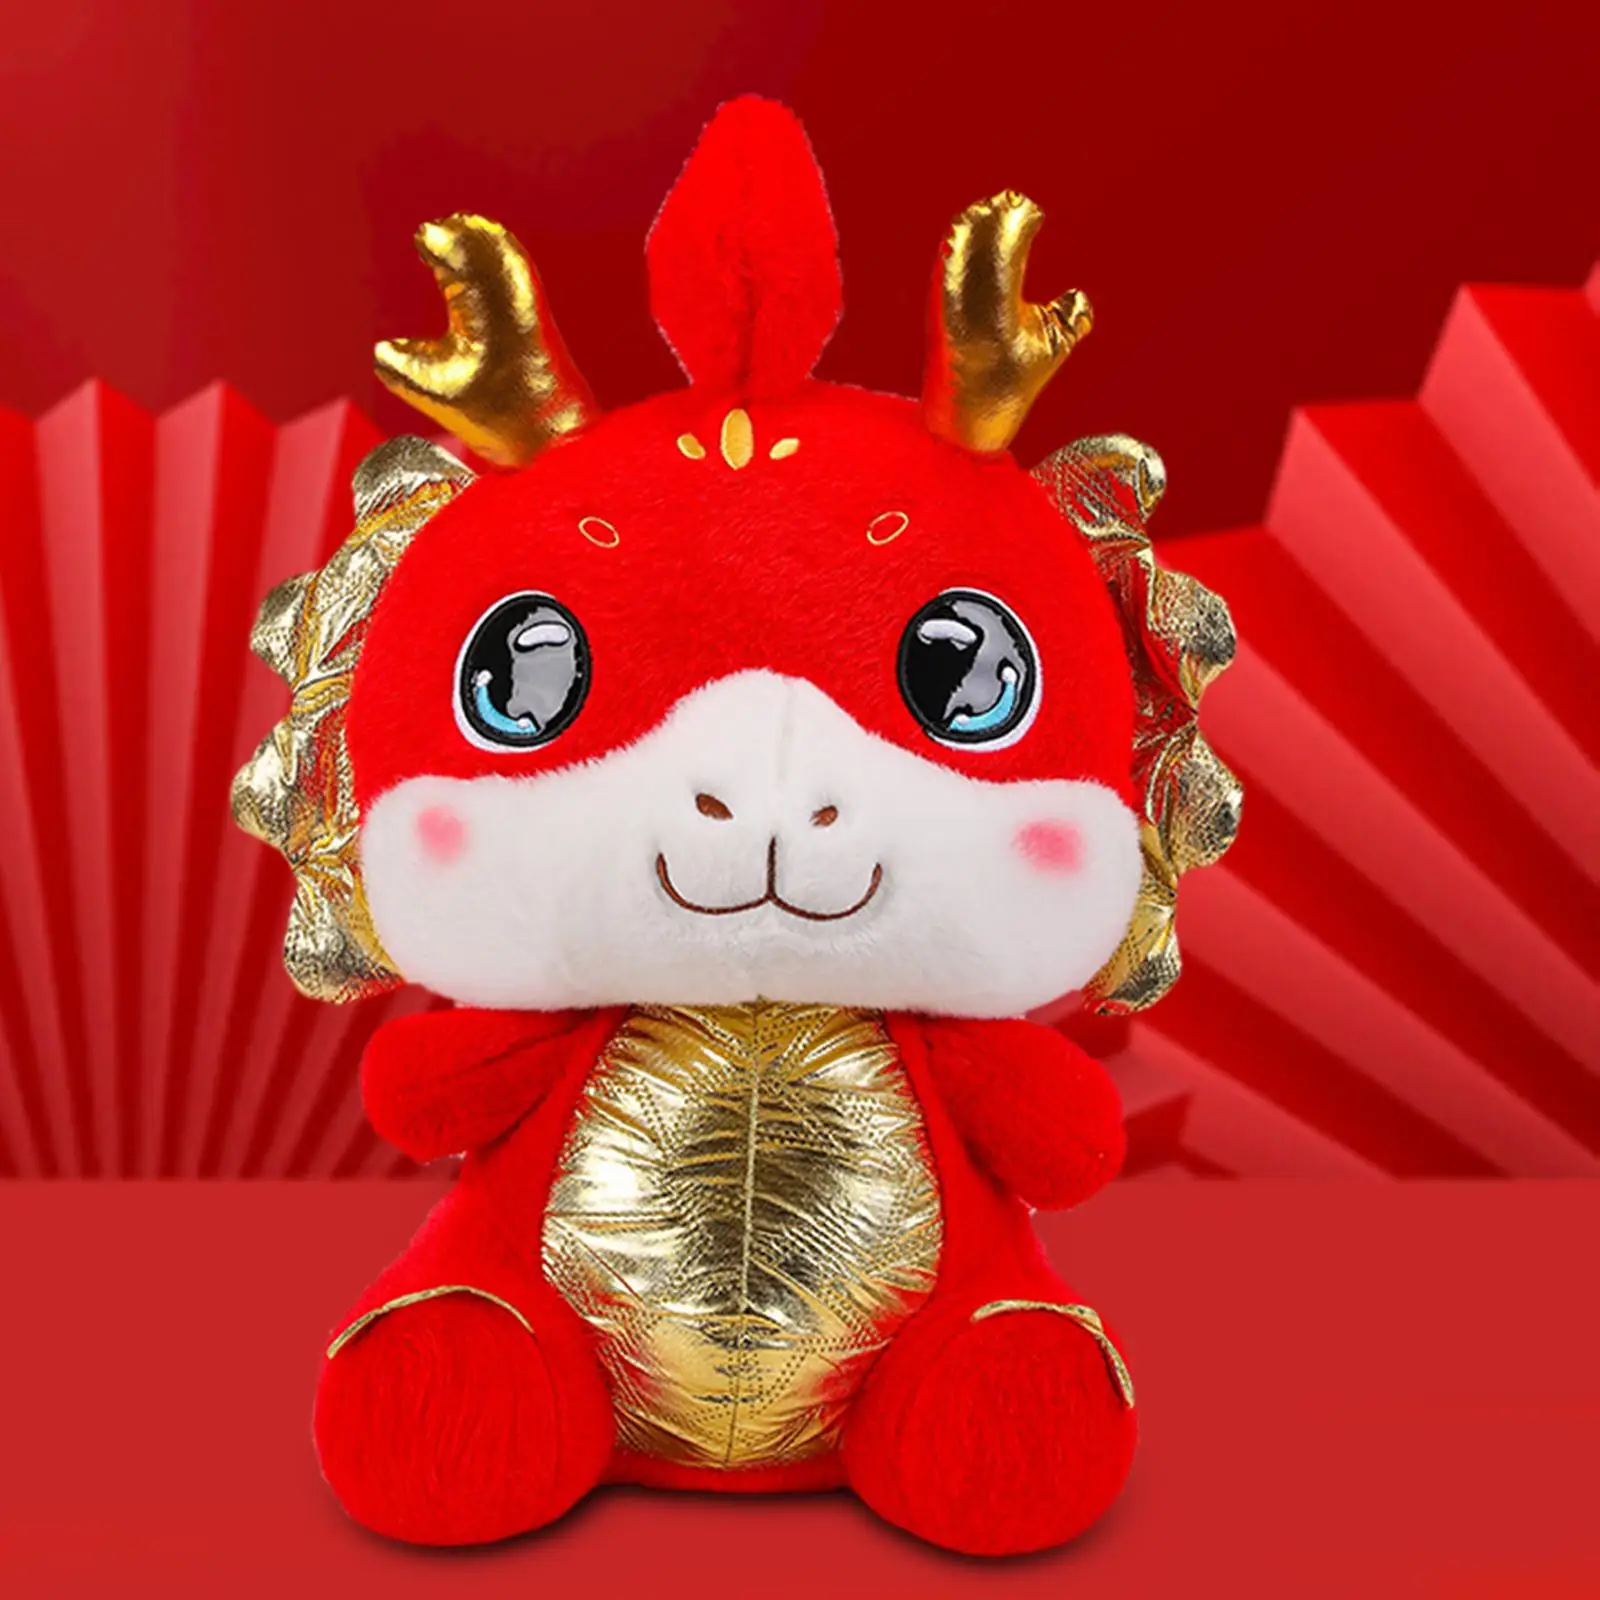 

Плюшевое животное дракон мягкий красный дракон мультфильм большое китайское Новогоднее украшение для дивана кровати кушетки сувенир домашний декор для спальни